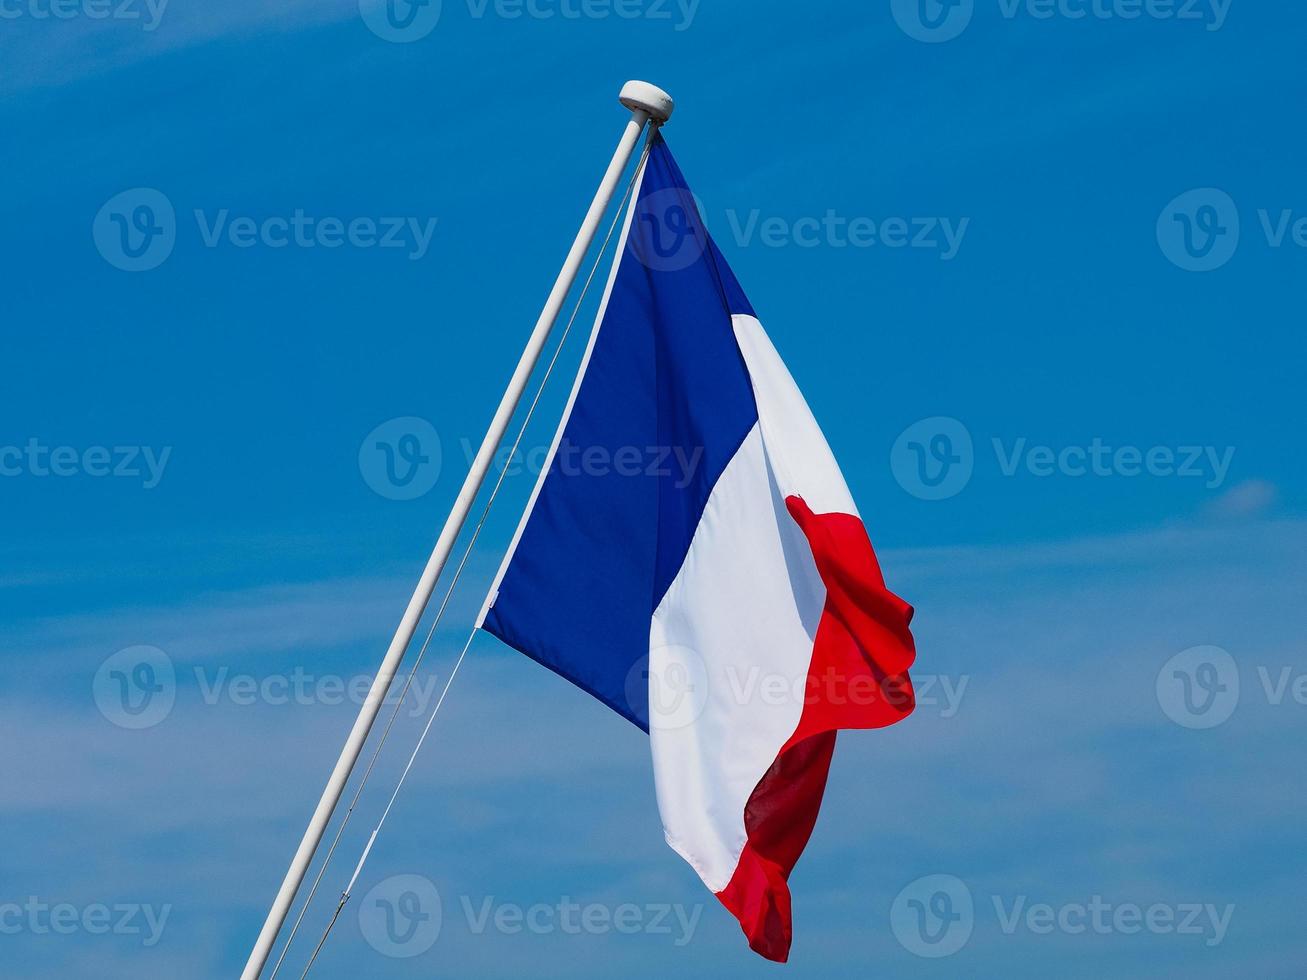 bandeira francesa da frança sobre o céu azul foto